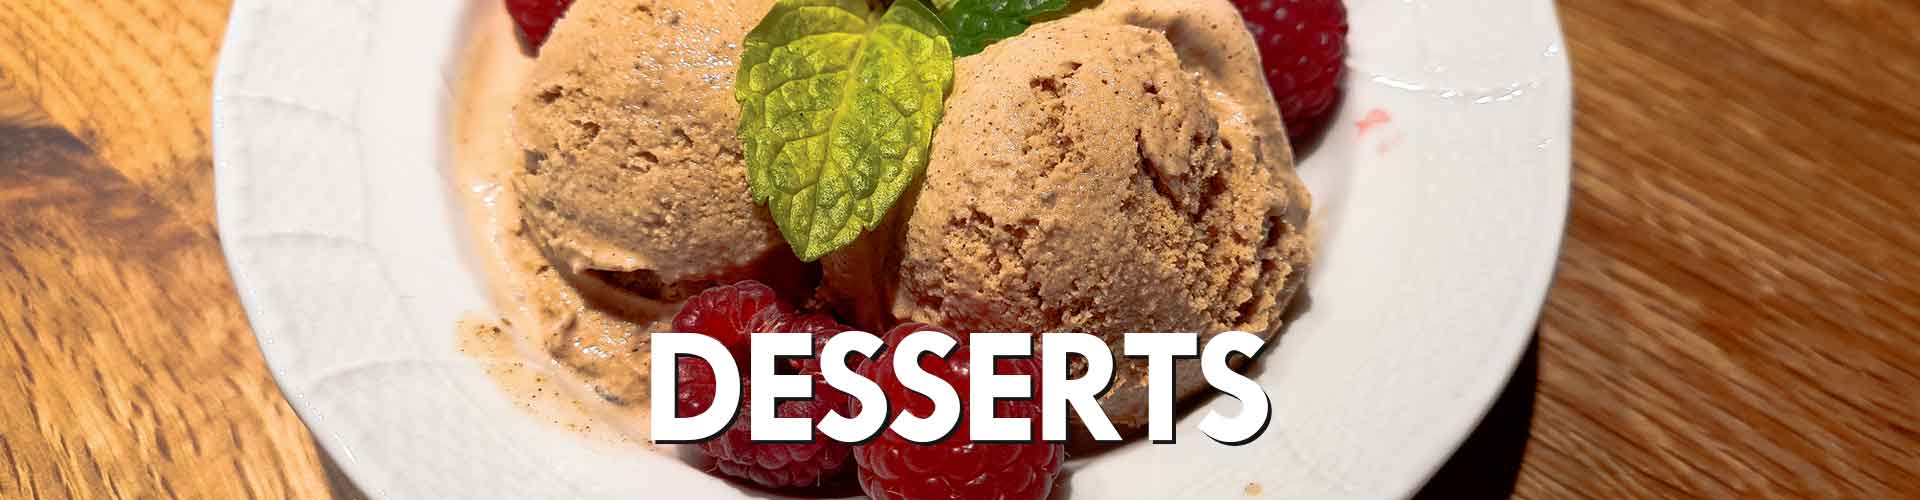 Leckere Desserts mit Vanille